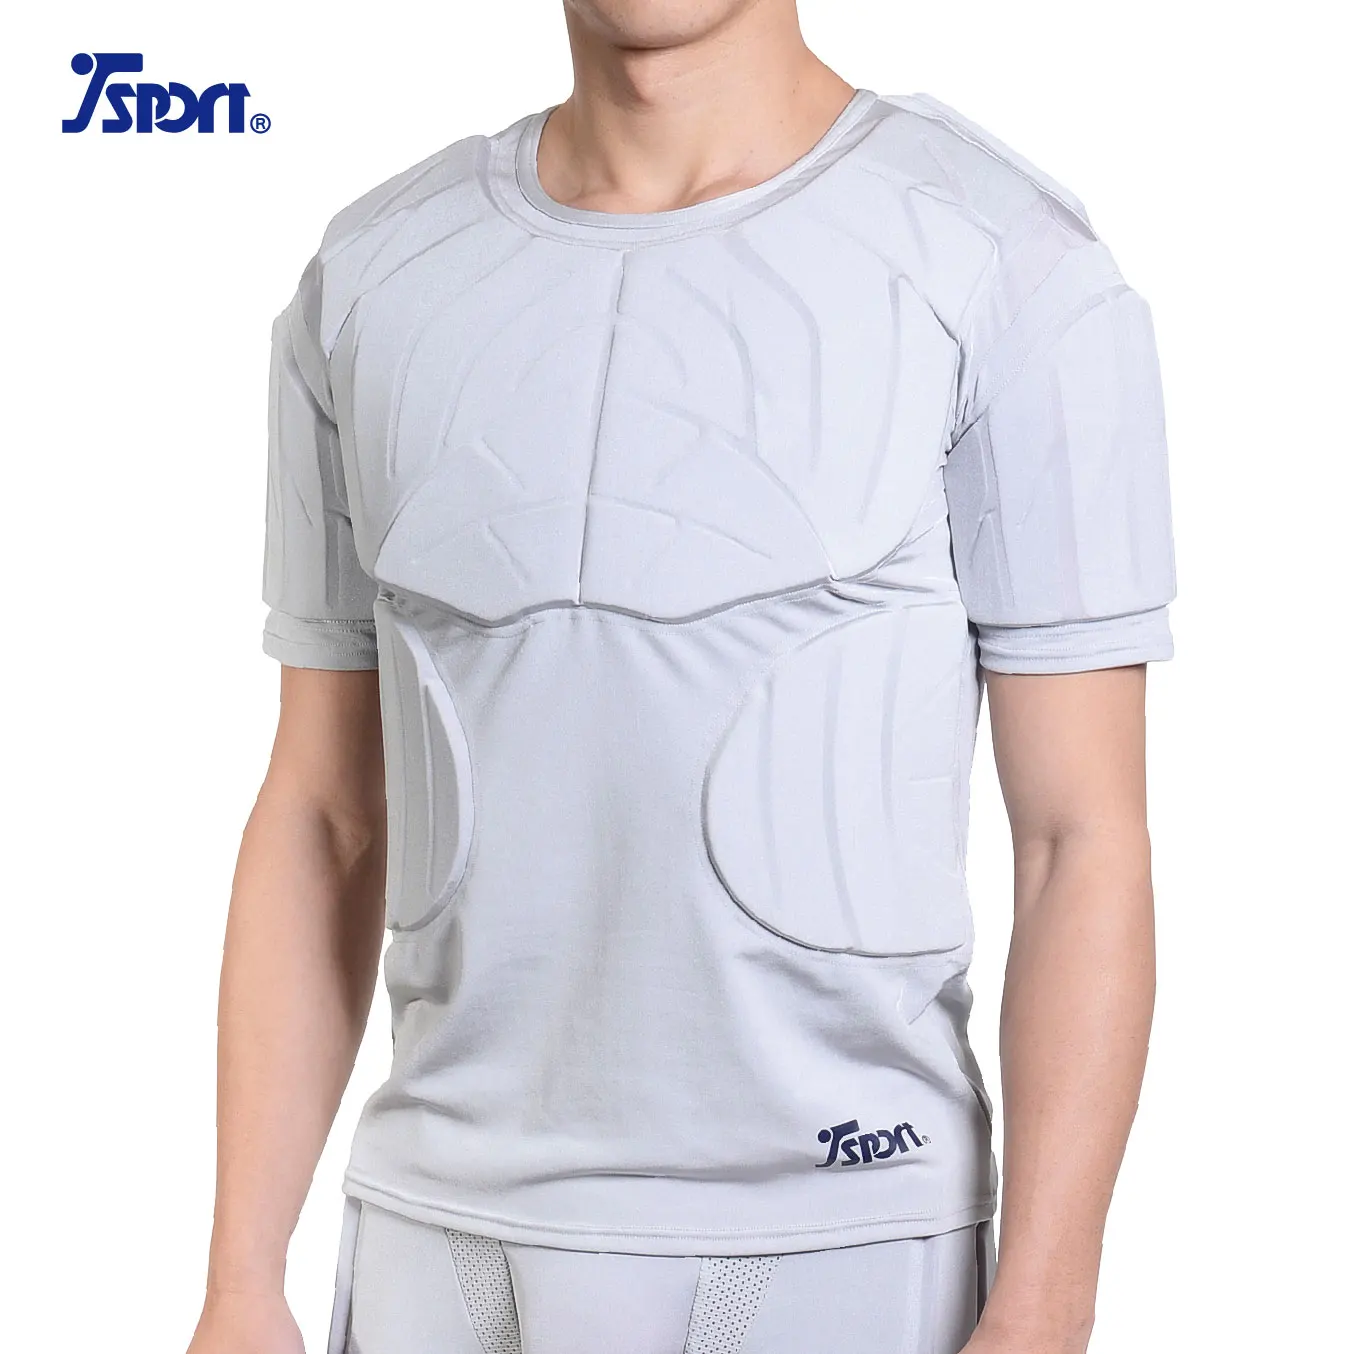 Topeter Camiseta de fútbol acolchada para hombre Protectores de costillas Camisetas de compresión con almohadillas Equipo de protección de baloncesto Camiseta sin mangas de rugby 